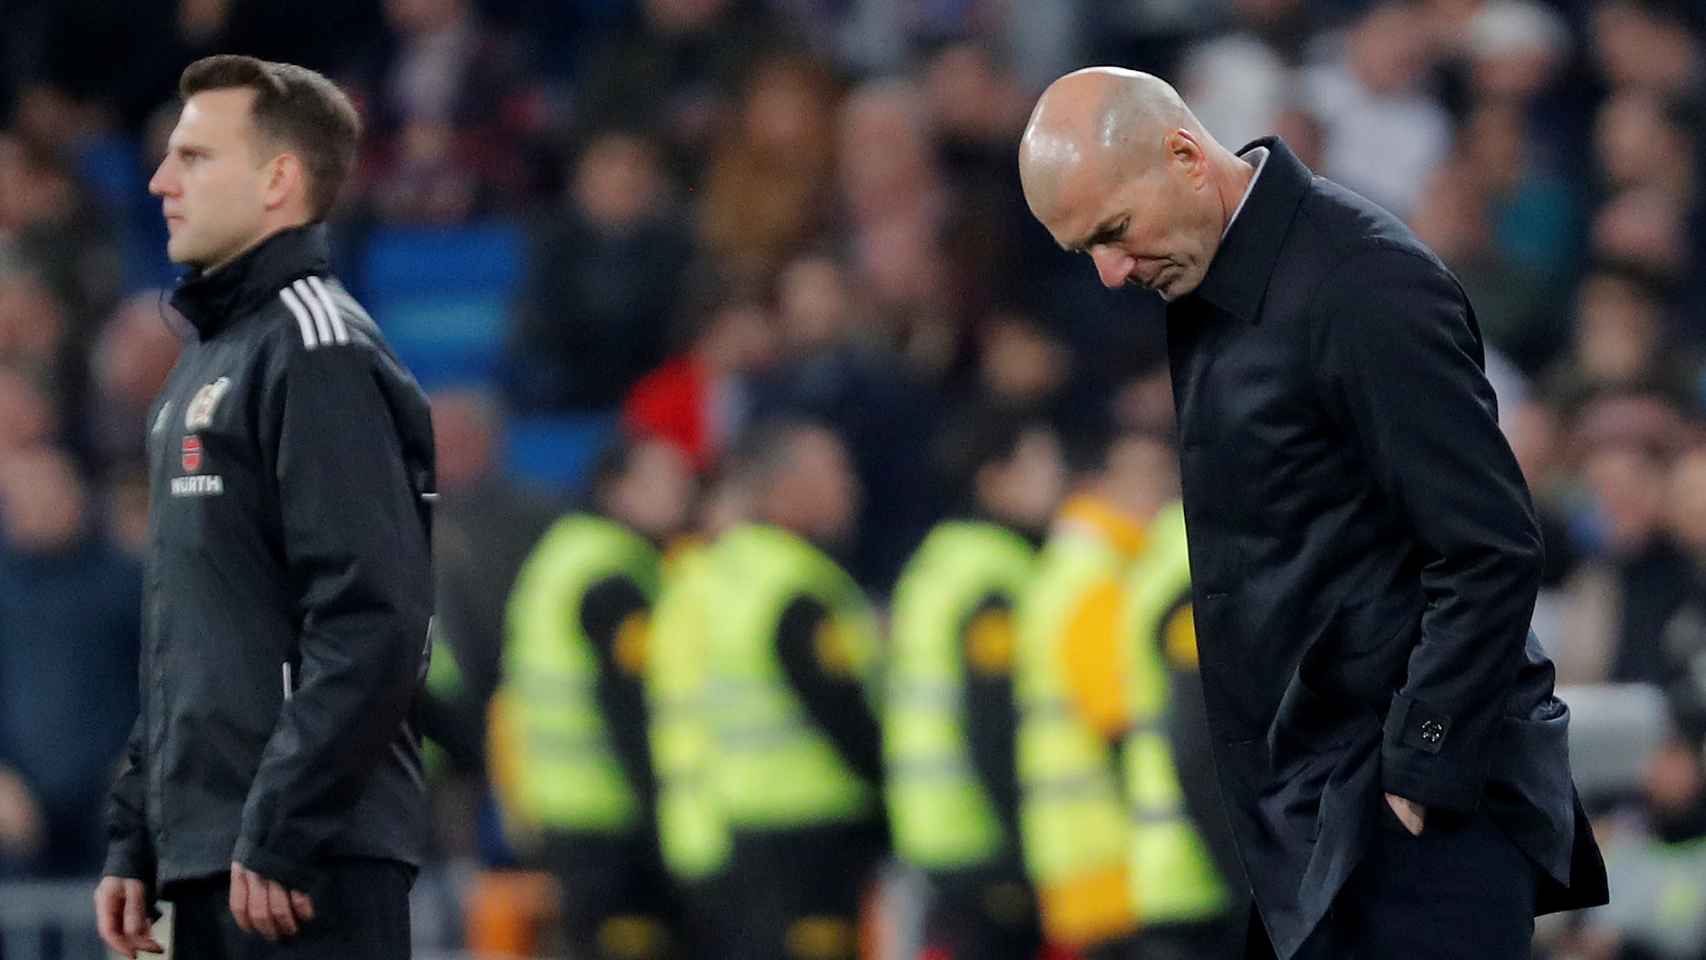 Zidane, en la banda del Santiago Bernabéu